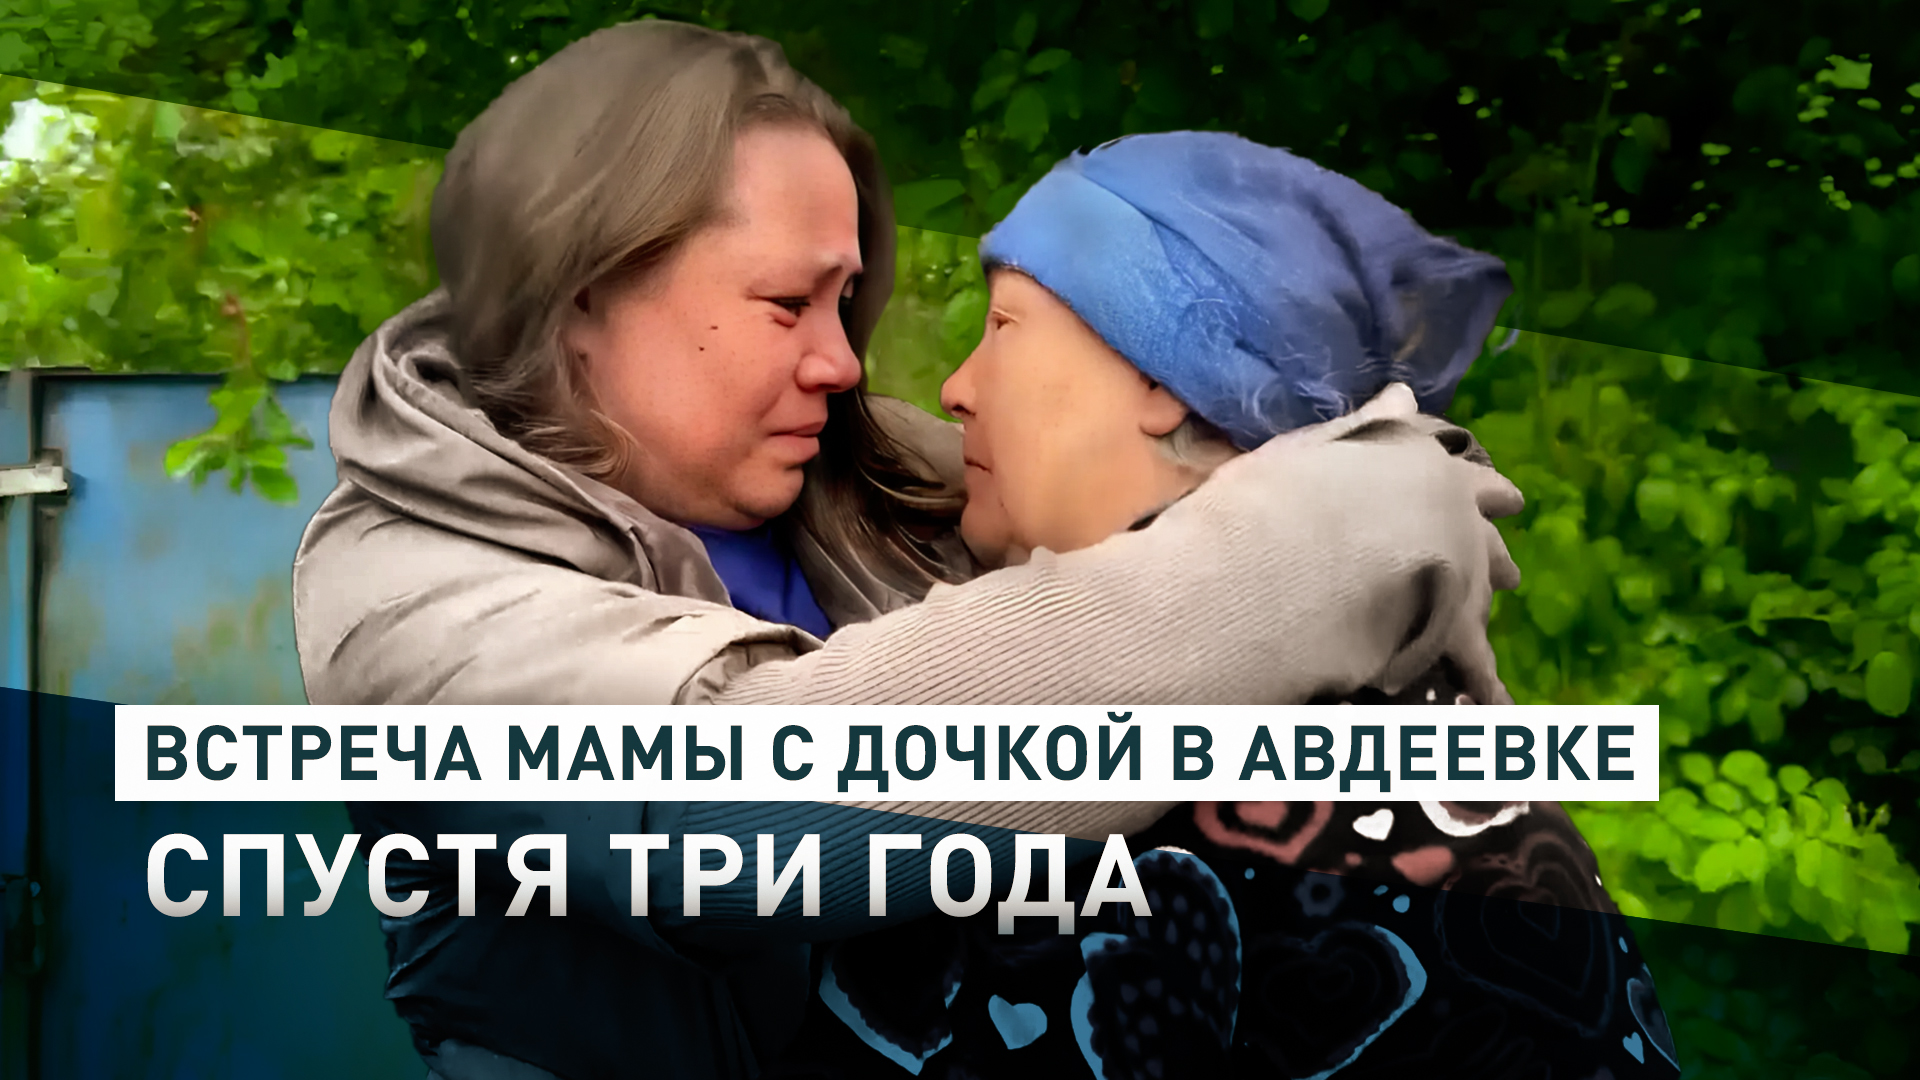 «Спасибо, что привезли к мамочке»: команда RT помогла жительнице Авдеевки увидеться с дочерью